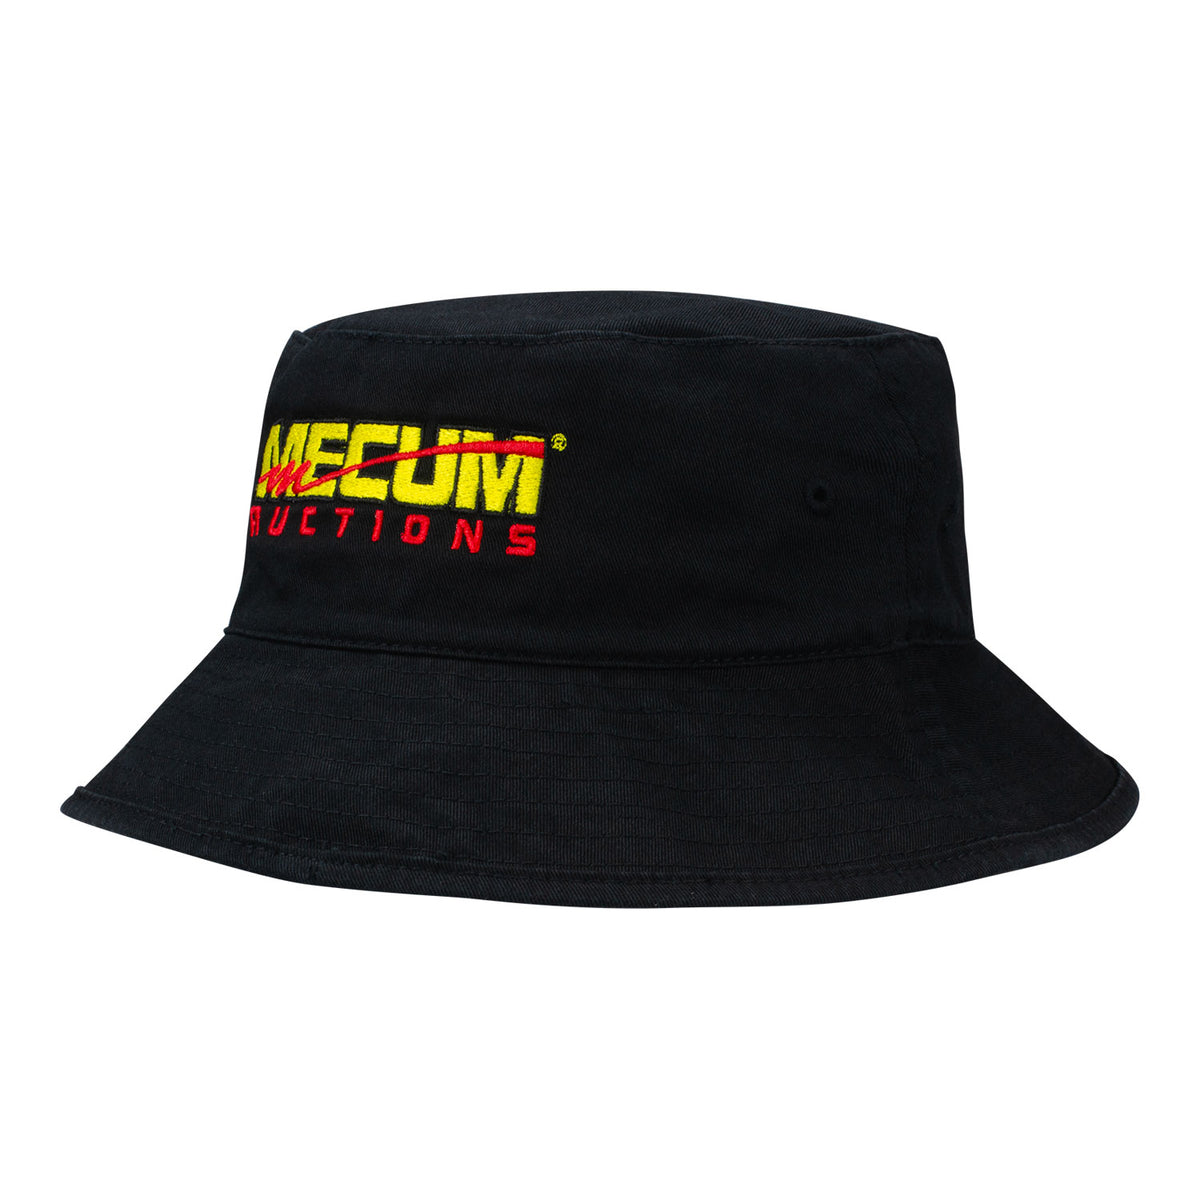 Mecum Auctions Black Reversible Bucket Hat - Front View